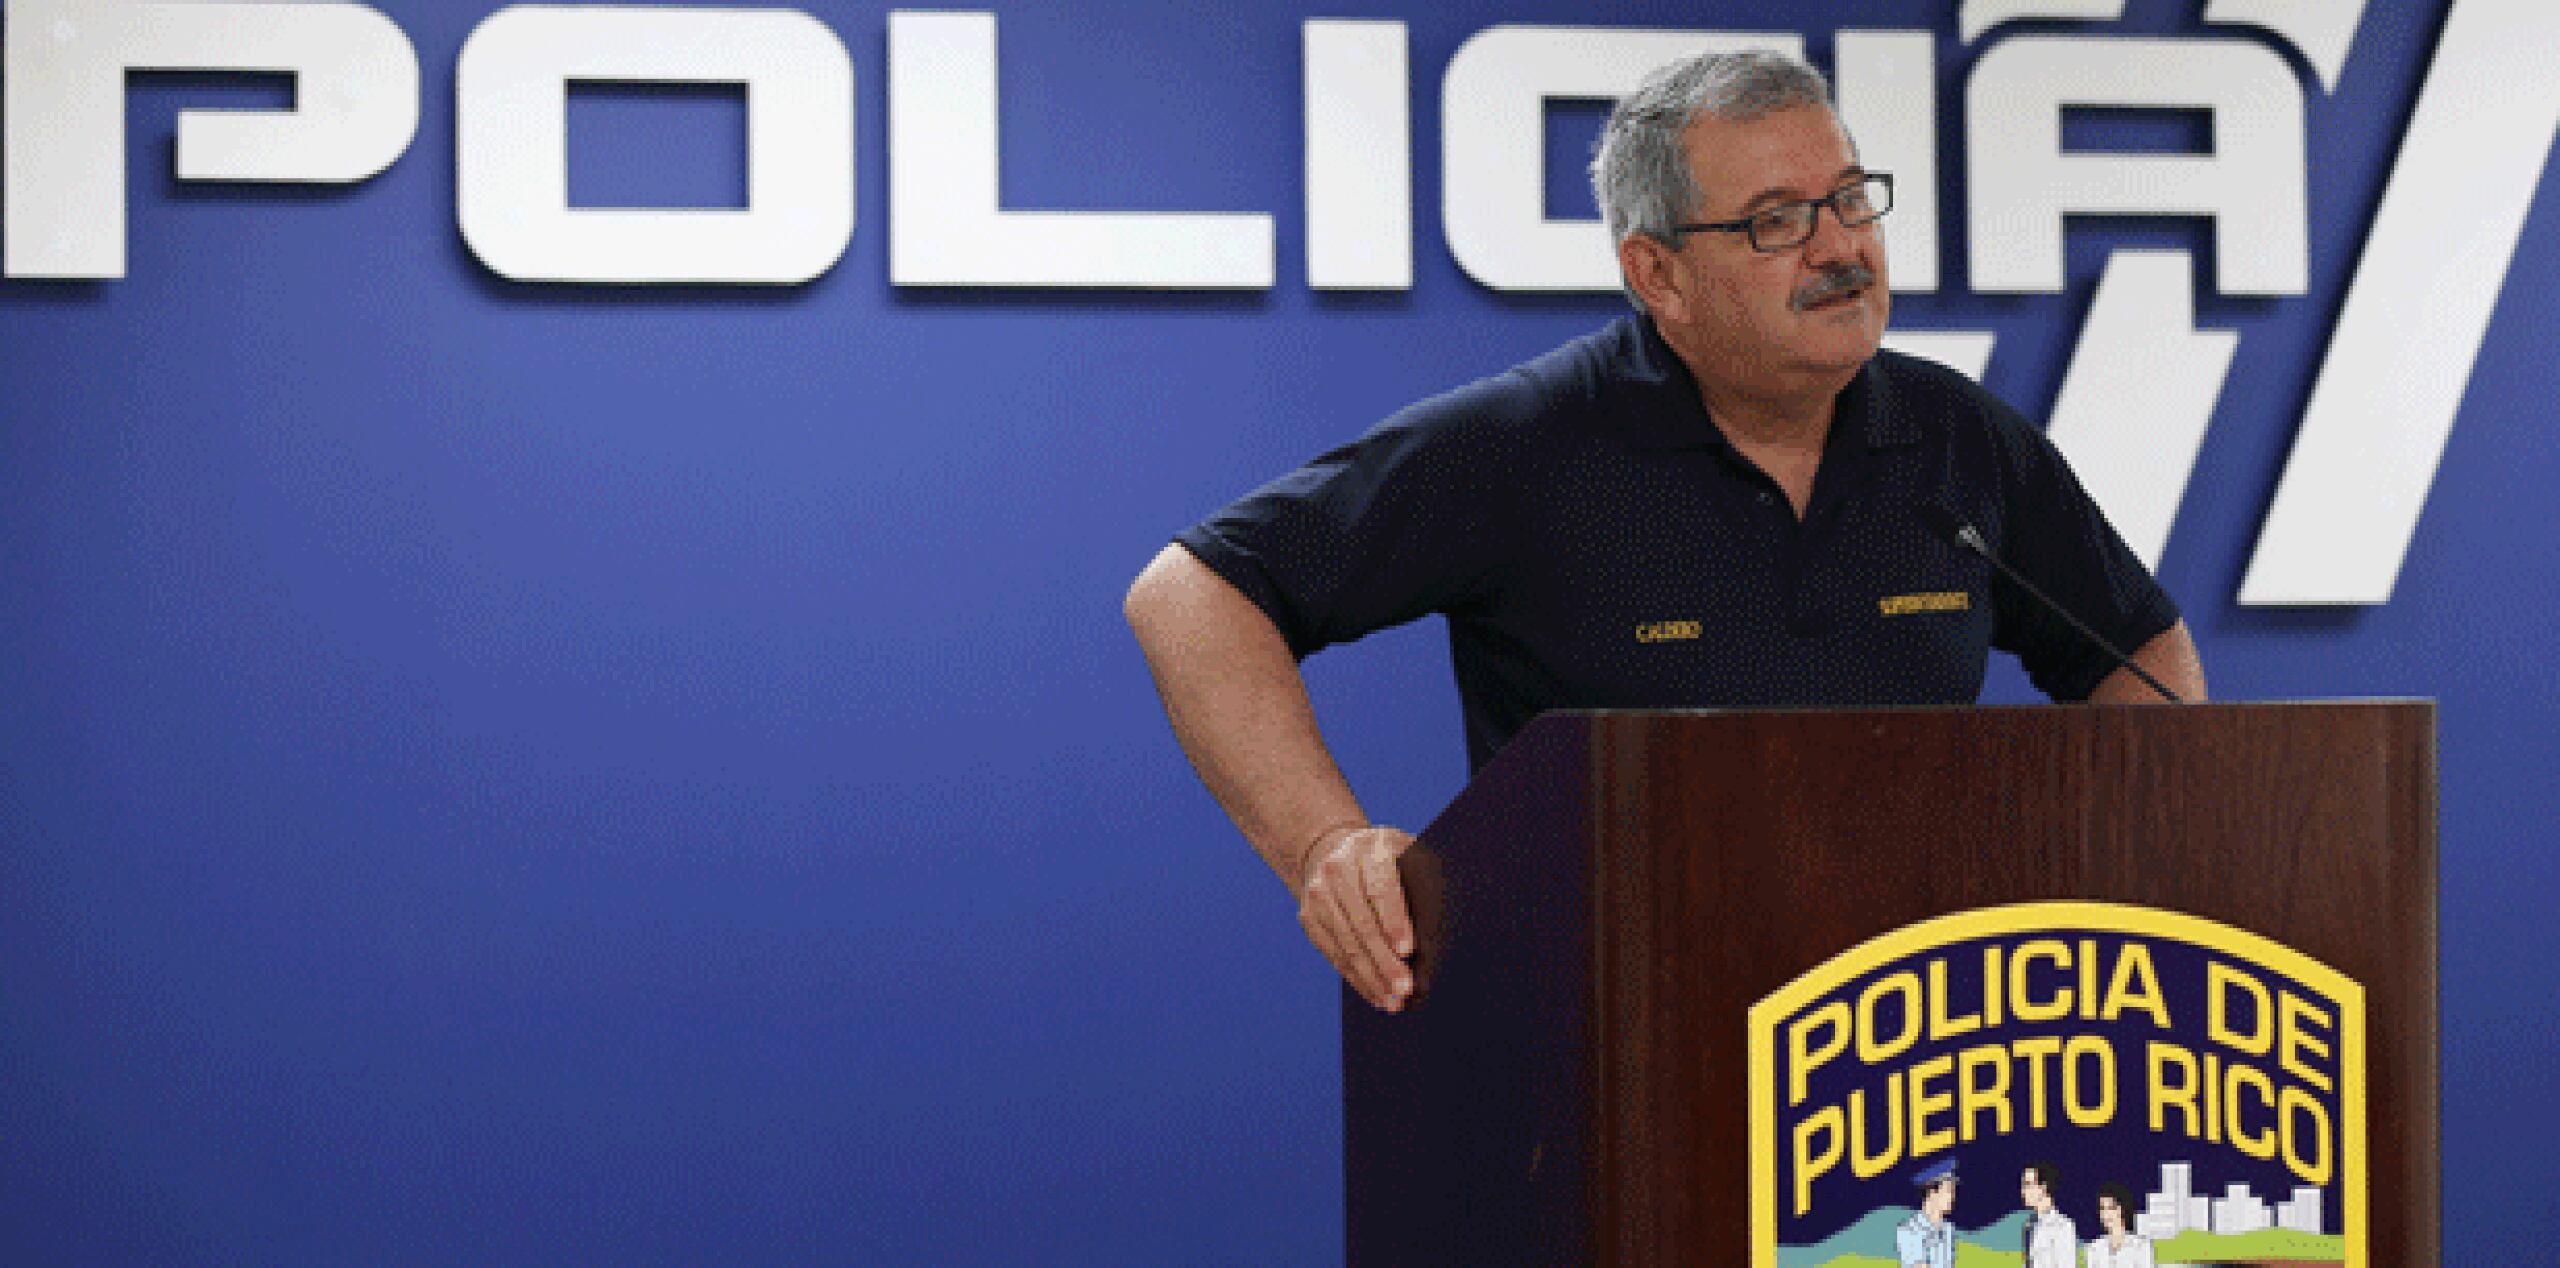 El superintendente de la Policía, José L. Caldero López, anticipó que los hechos ocurrieron el 16 de mayo. (vanessa.serra@gfrmedia.com)